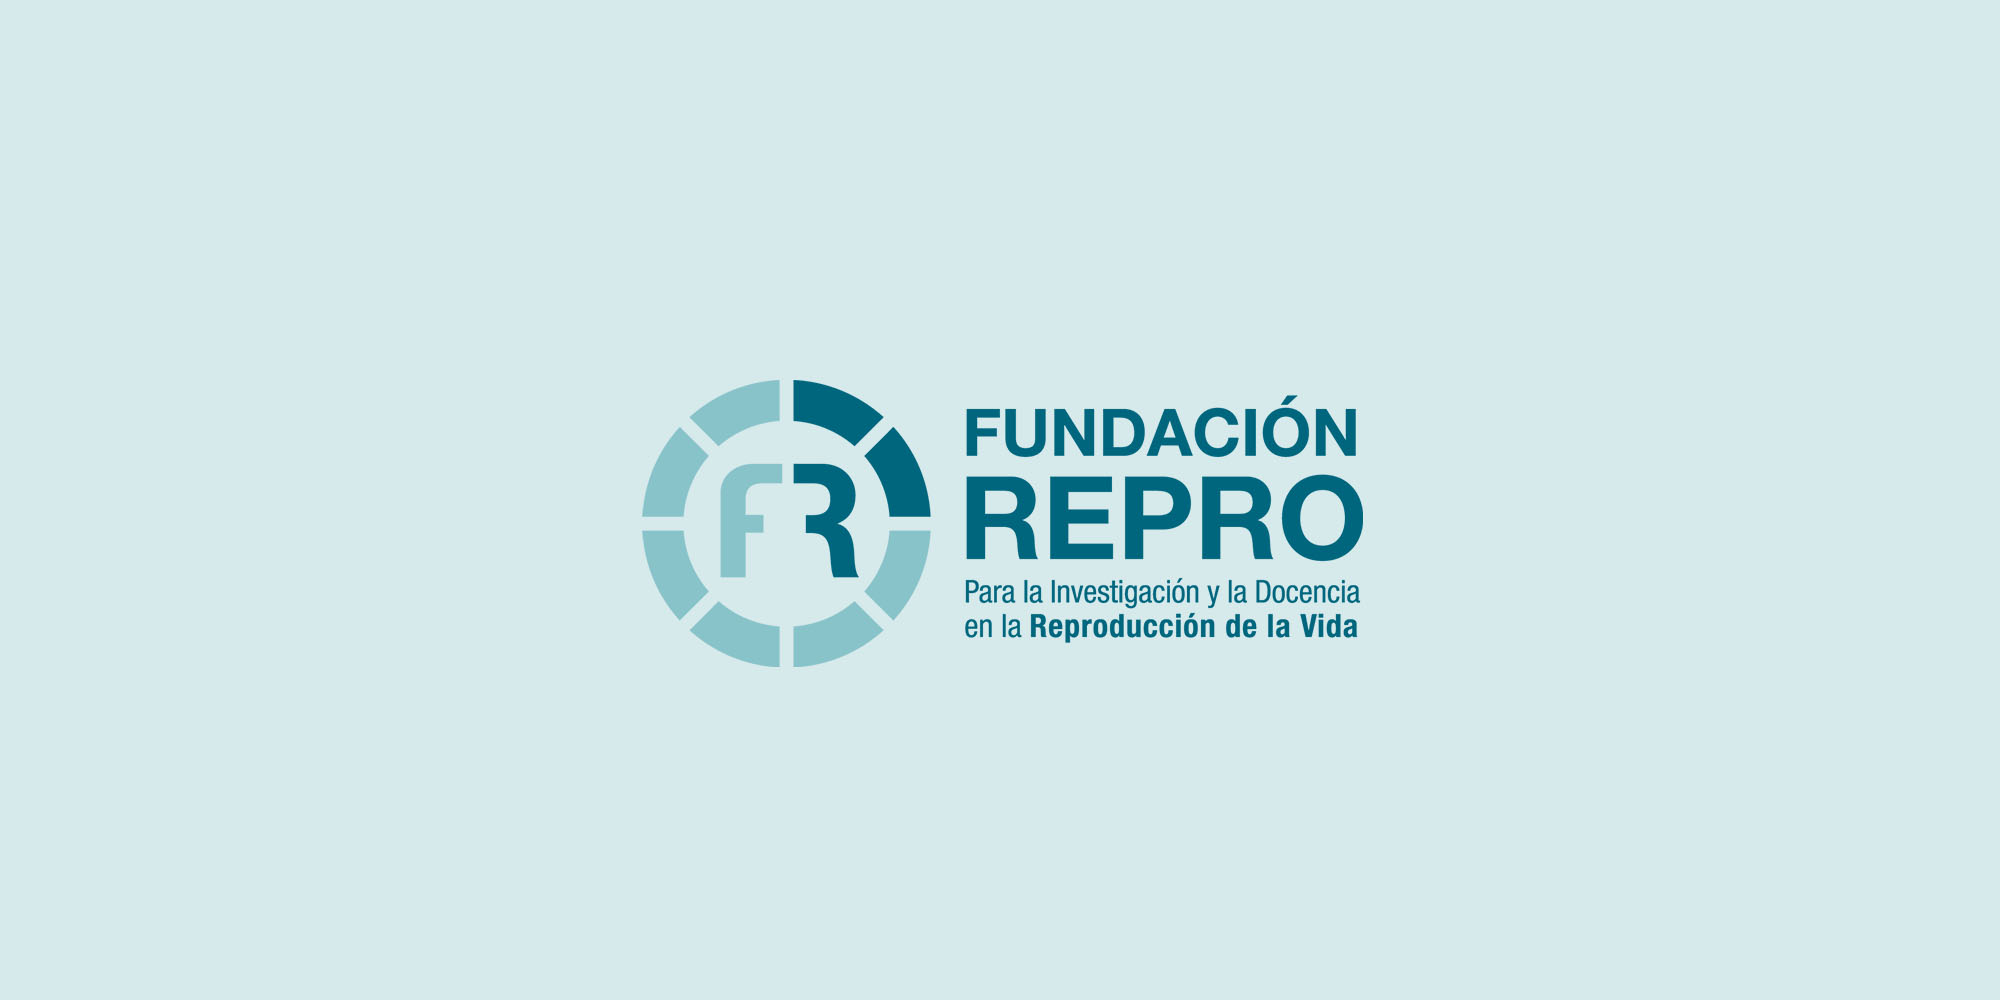 Carta de Fundación Repro a pacientes con infertilidad en vísperas de fin de año.